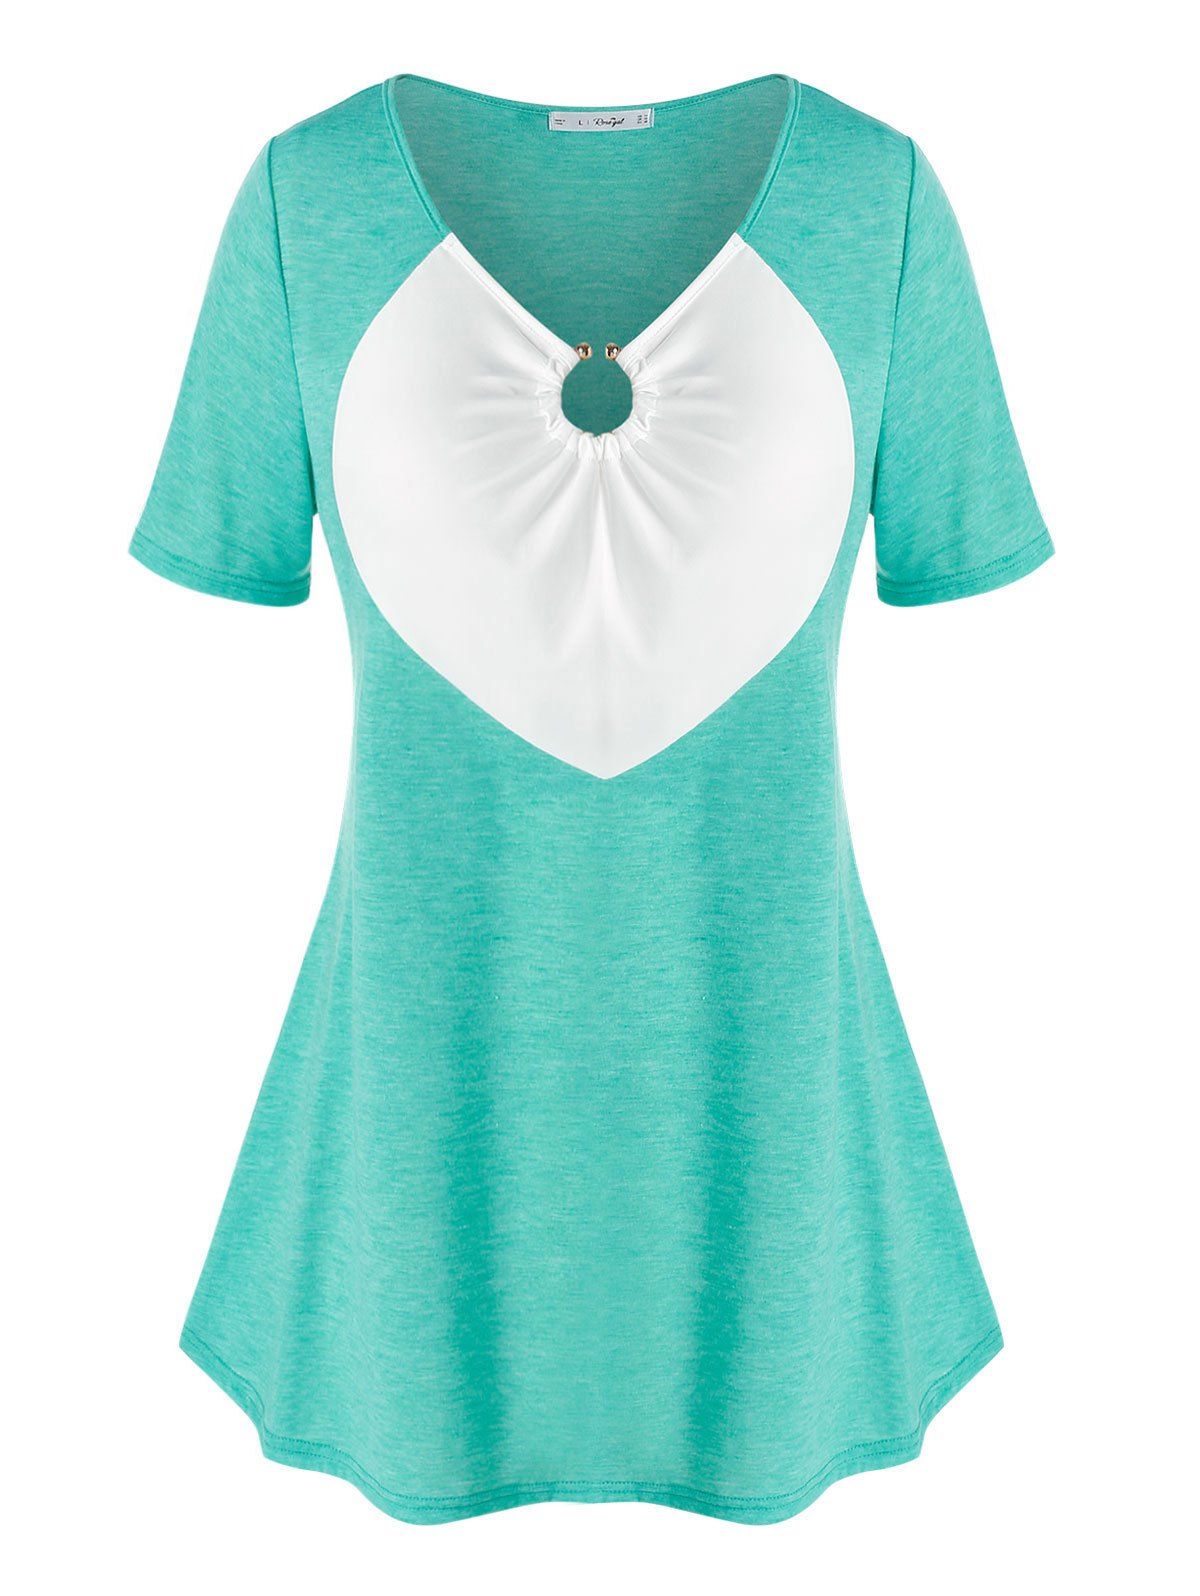 T-shirt Bicolore Sanglé Anneau en O de Grande Taille - Vert clair 5X